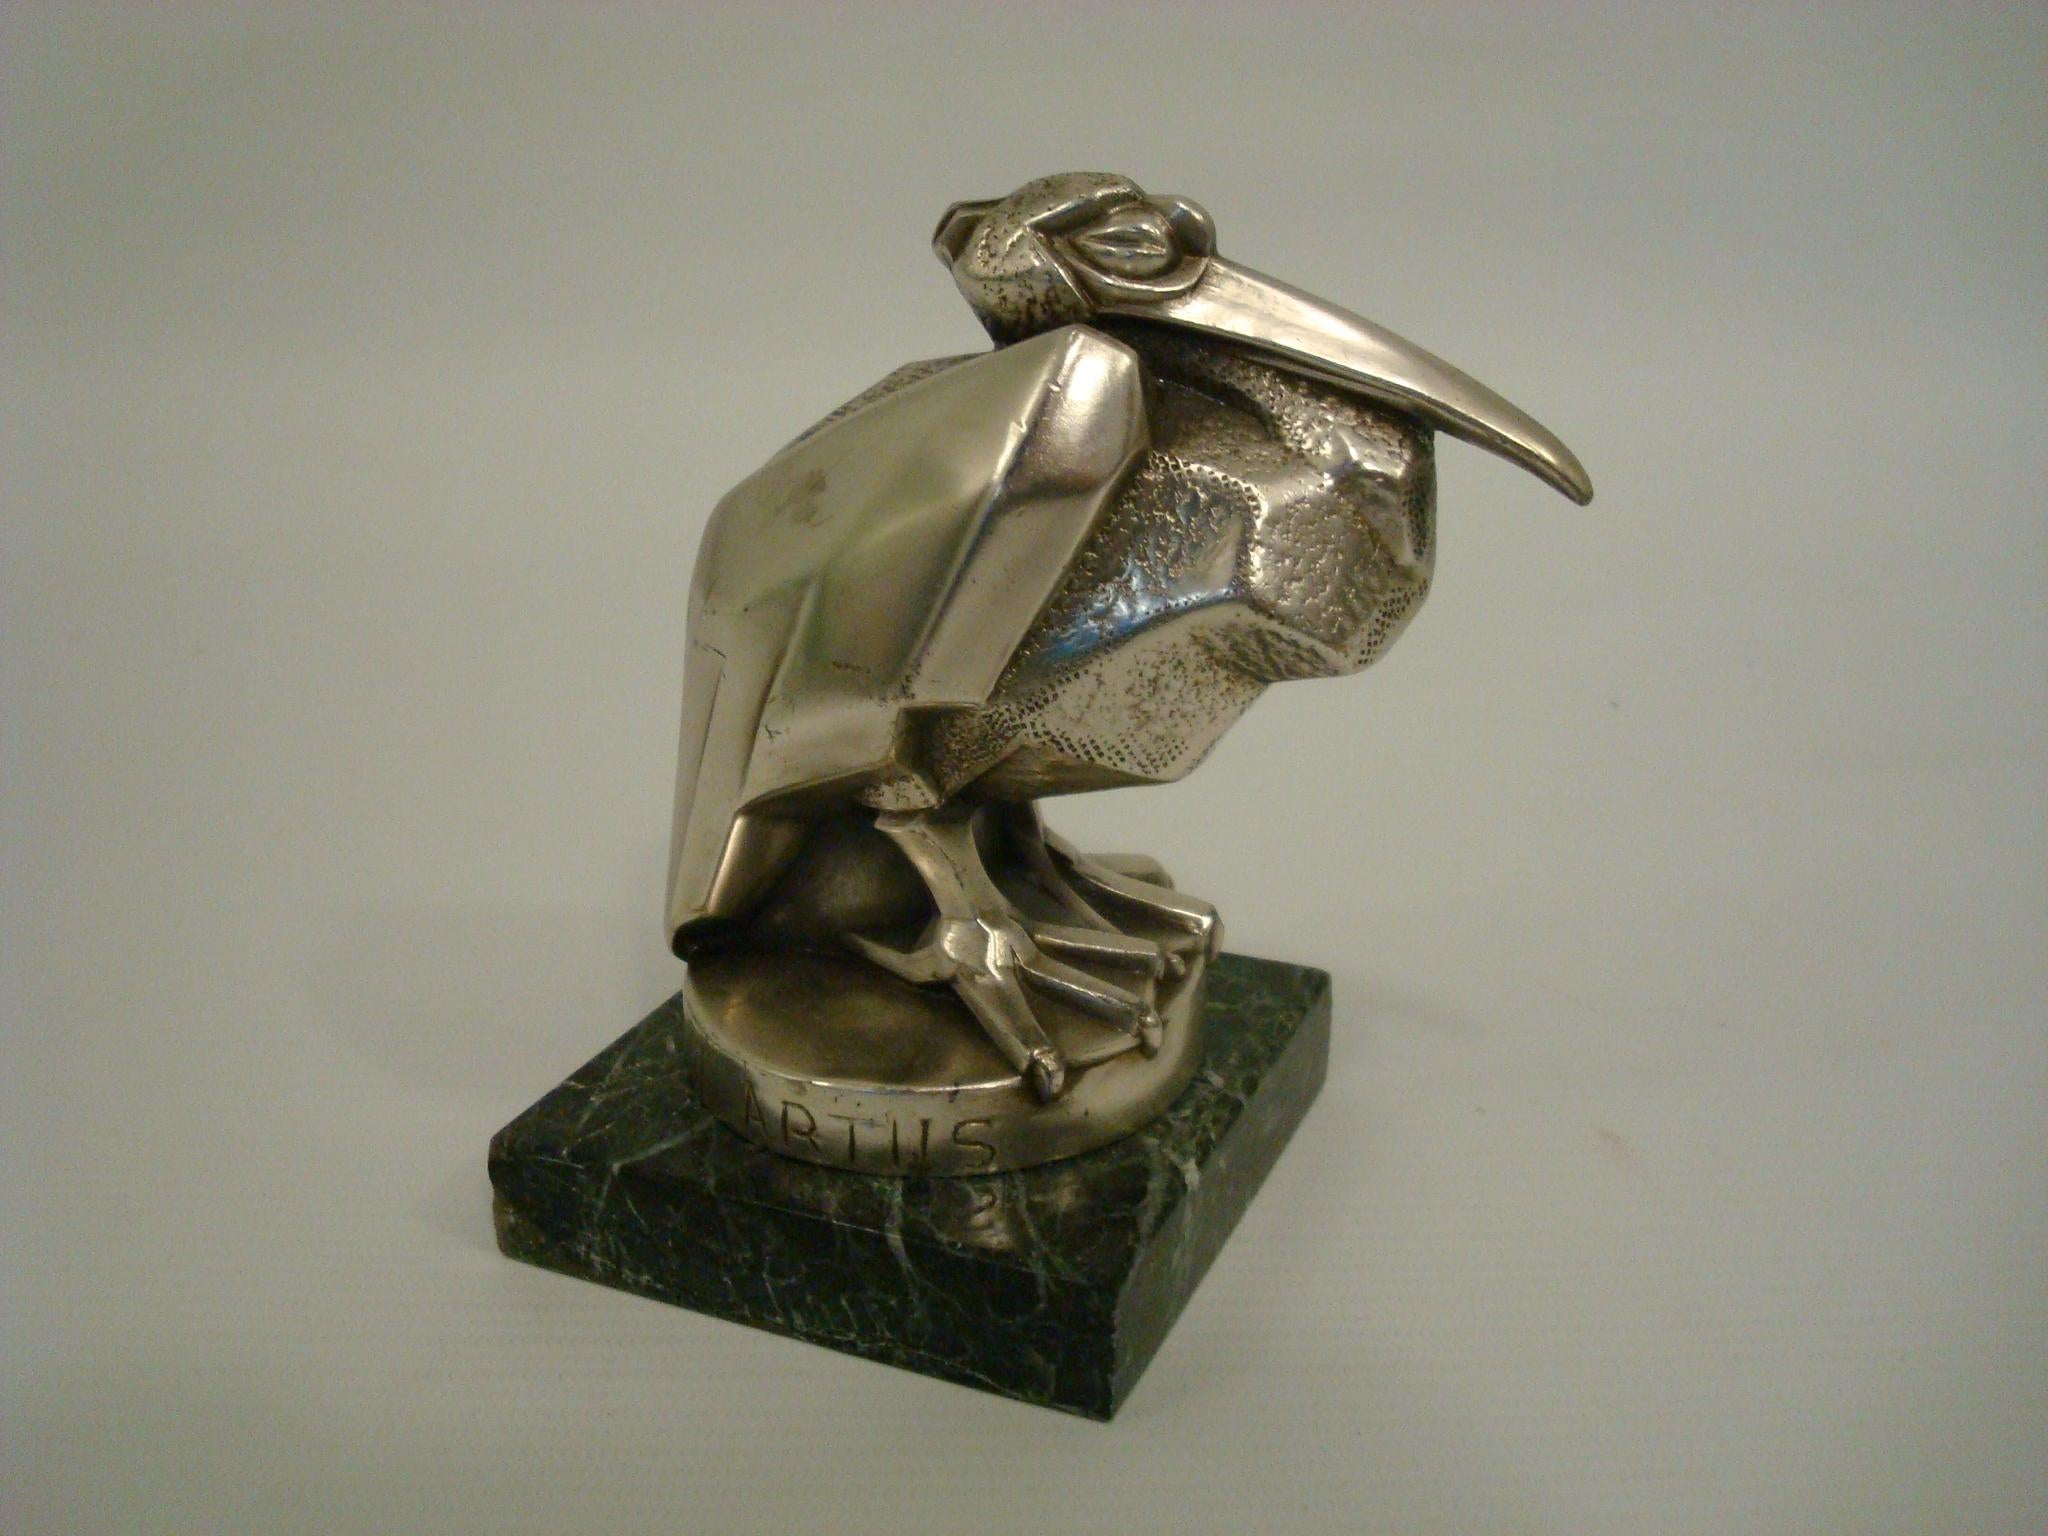 Art Deco Max Le Verrier / Artus Bird Hood Ornament / Briefbeschwerer - Frankreich.
Schwer zu findender berühmter Pelikan von Artus aus der Zeit um 1925. (Pseudonym für Max Le Verrier).
Echte zeitgenössische Skulptur. Das perfekte Geschenk für